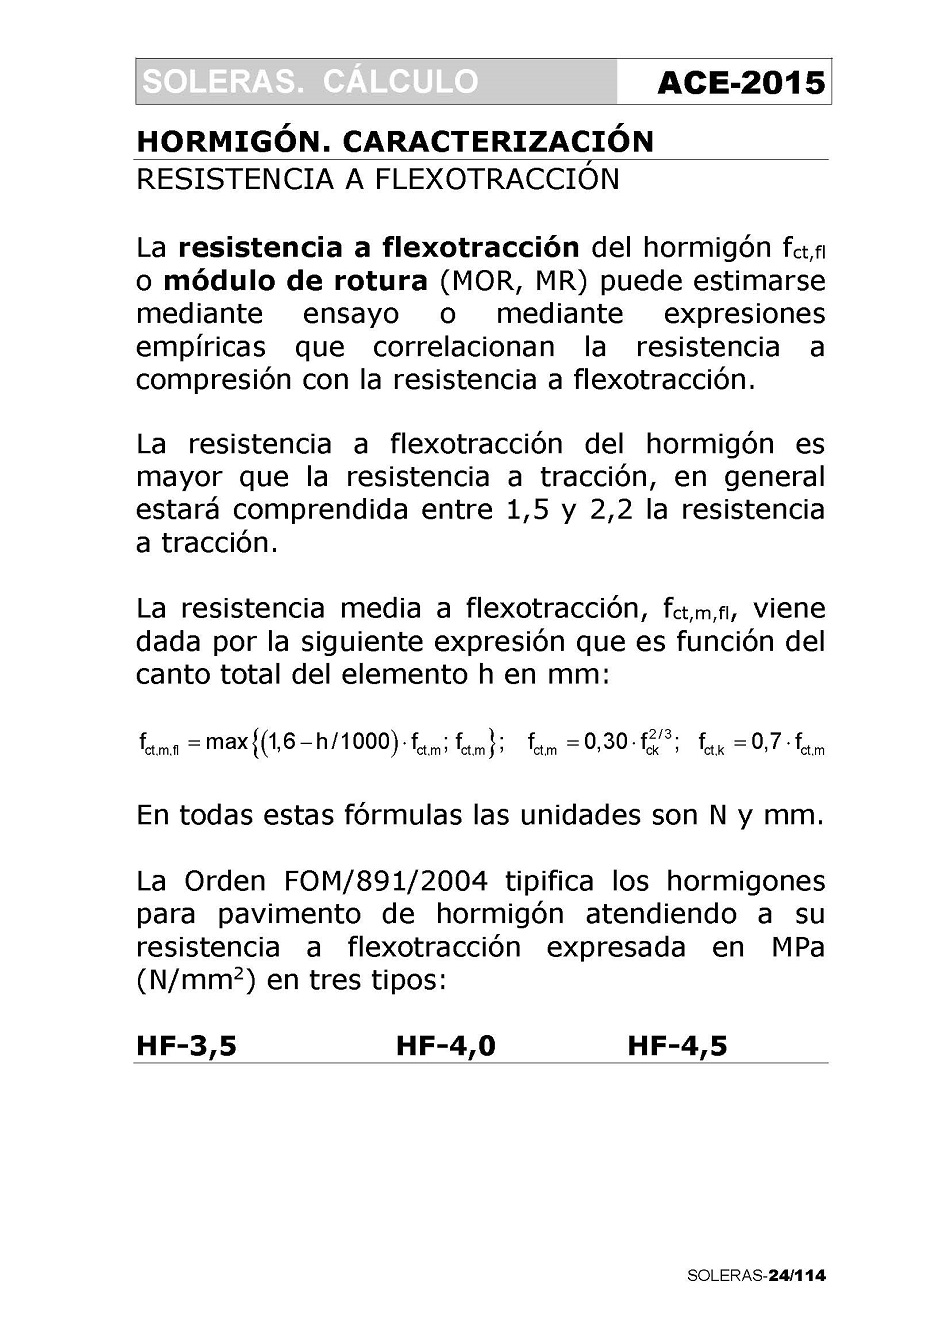 Cálculo de Soleras de Hormigón. Página 24